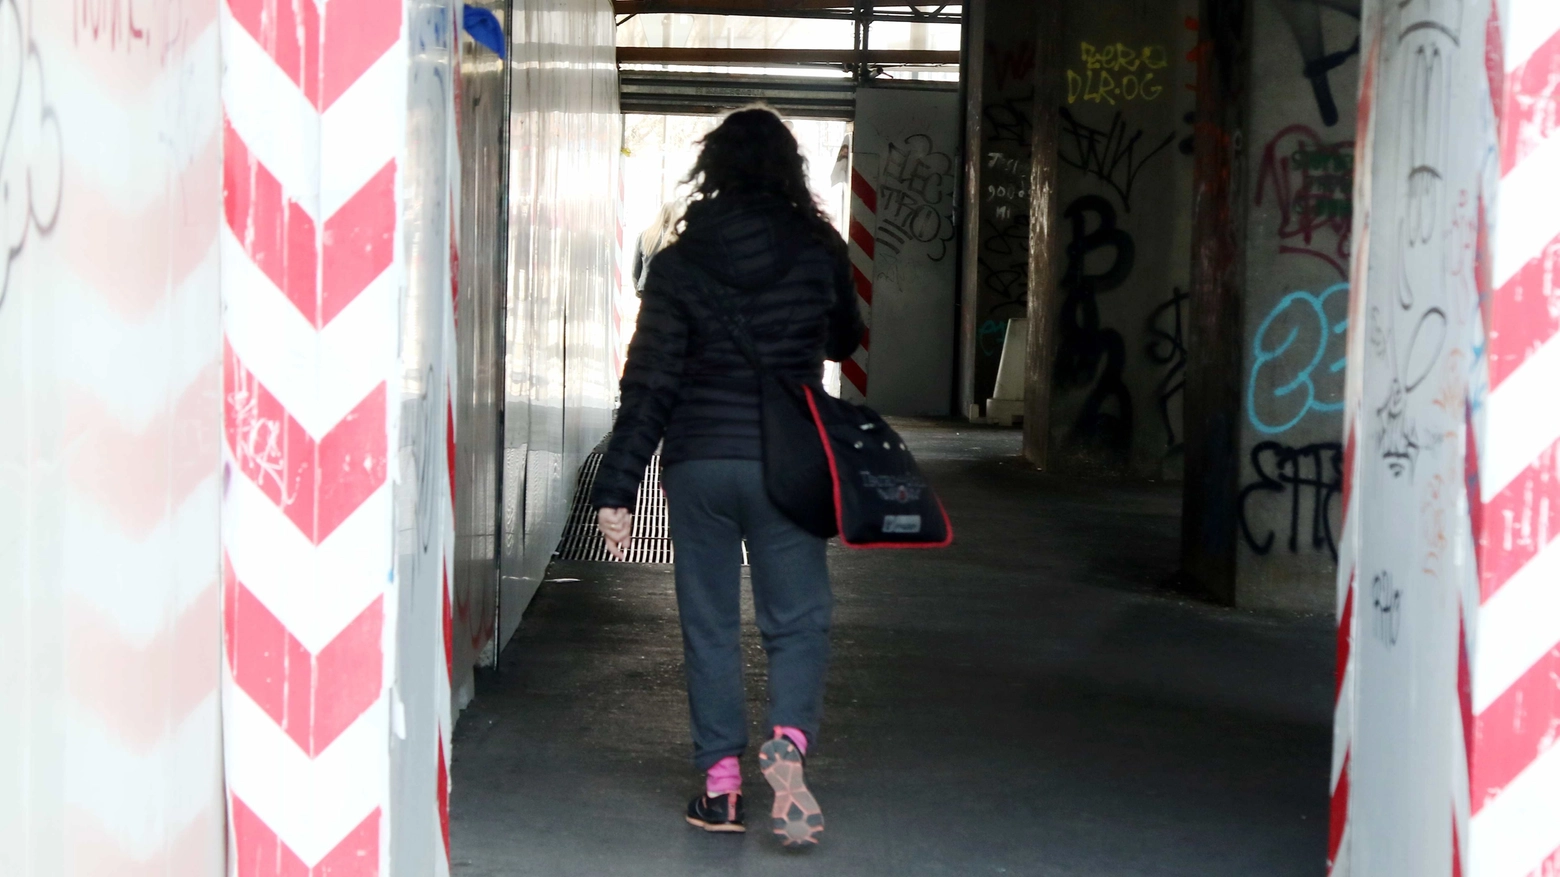 Una ragazza stava rientrando a casa a piedi ad Anzio quando è stata aggredita e stuprata